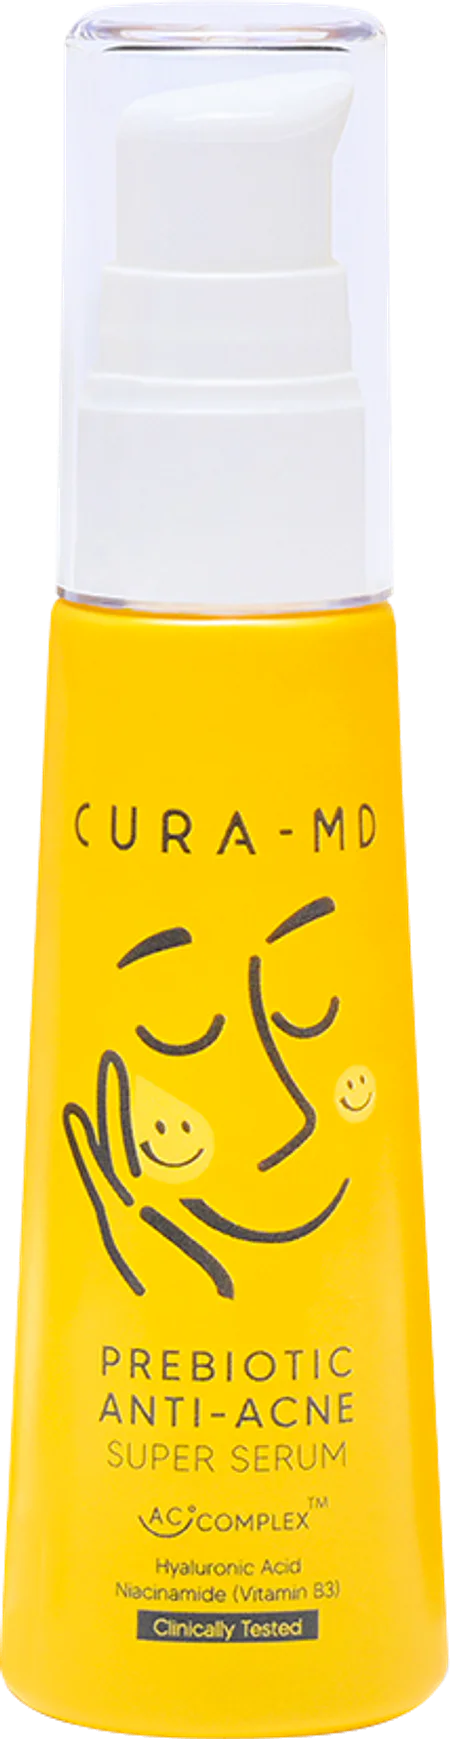 CURA-MD Prebiotic Anti-Acne Super Serum